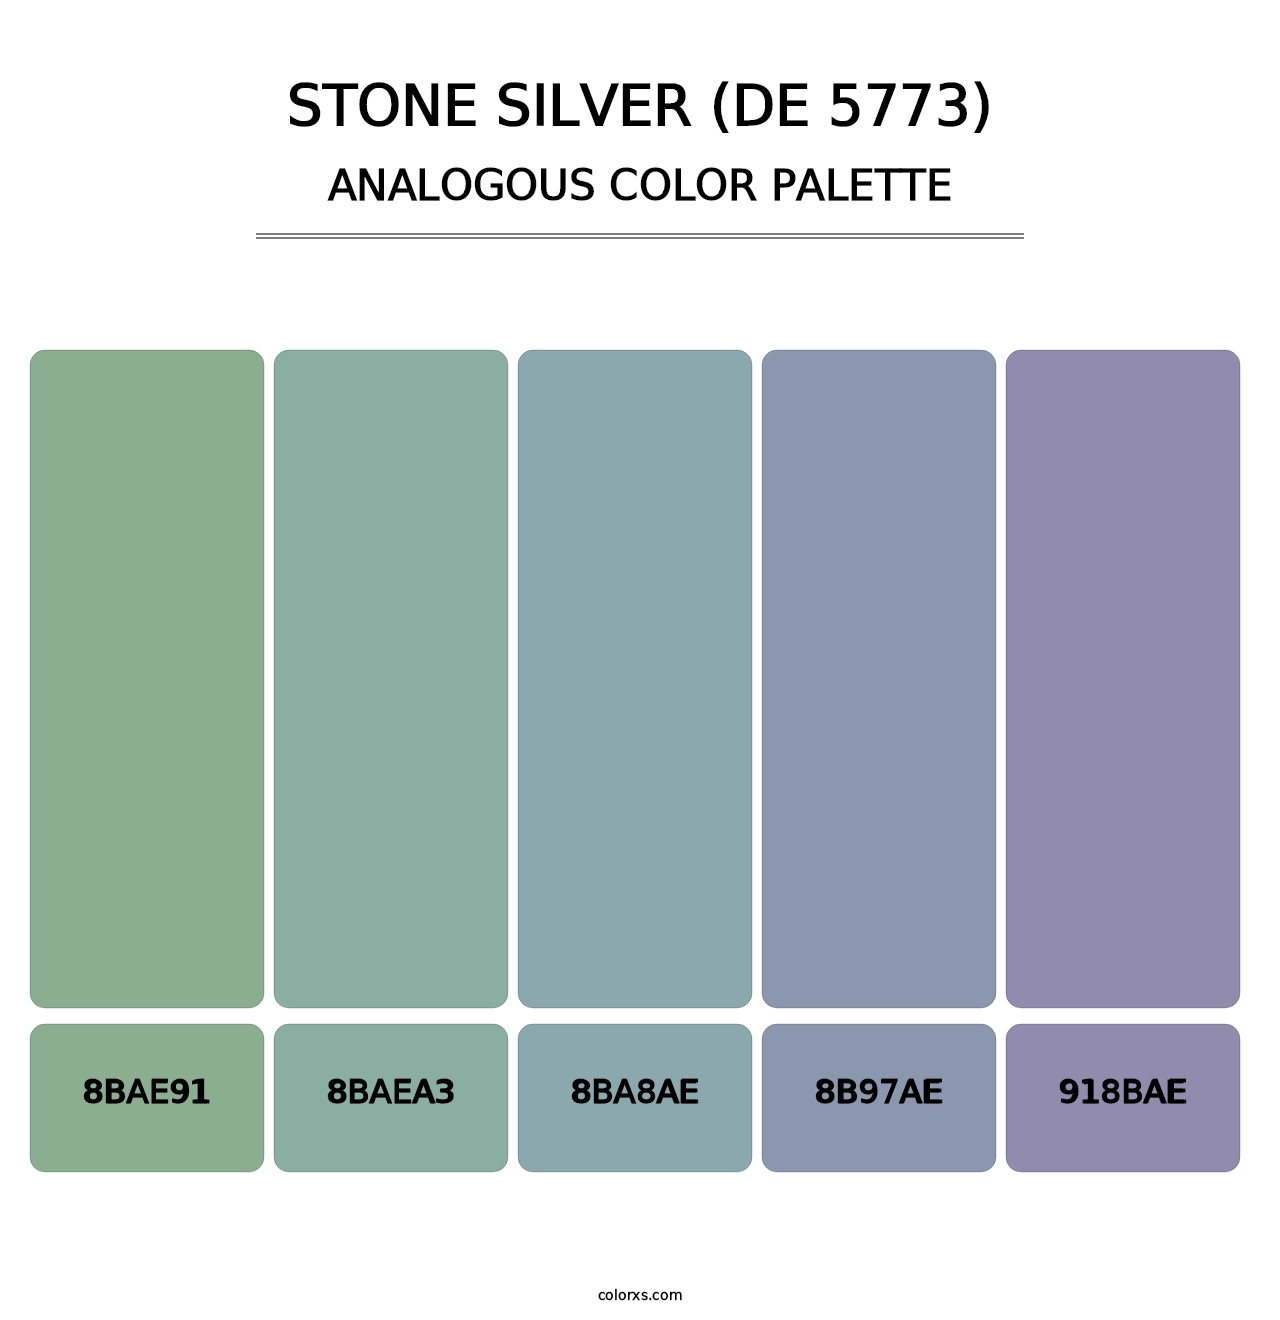 Stone Silver (DE 5773) - Analogous Color Palette